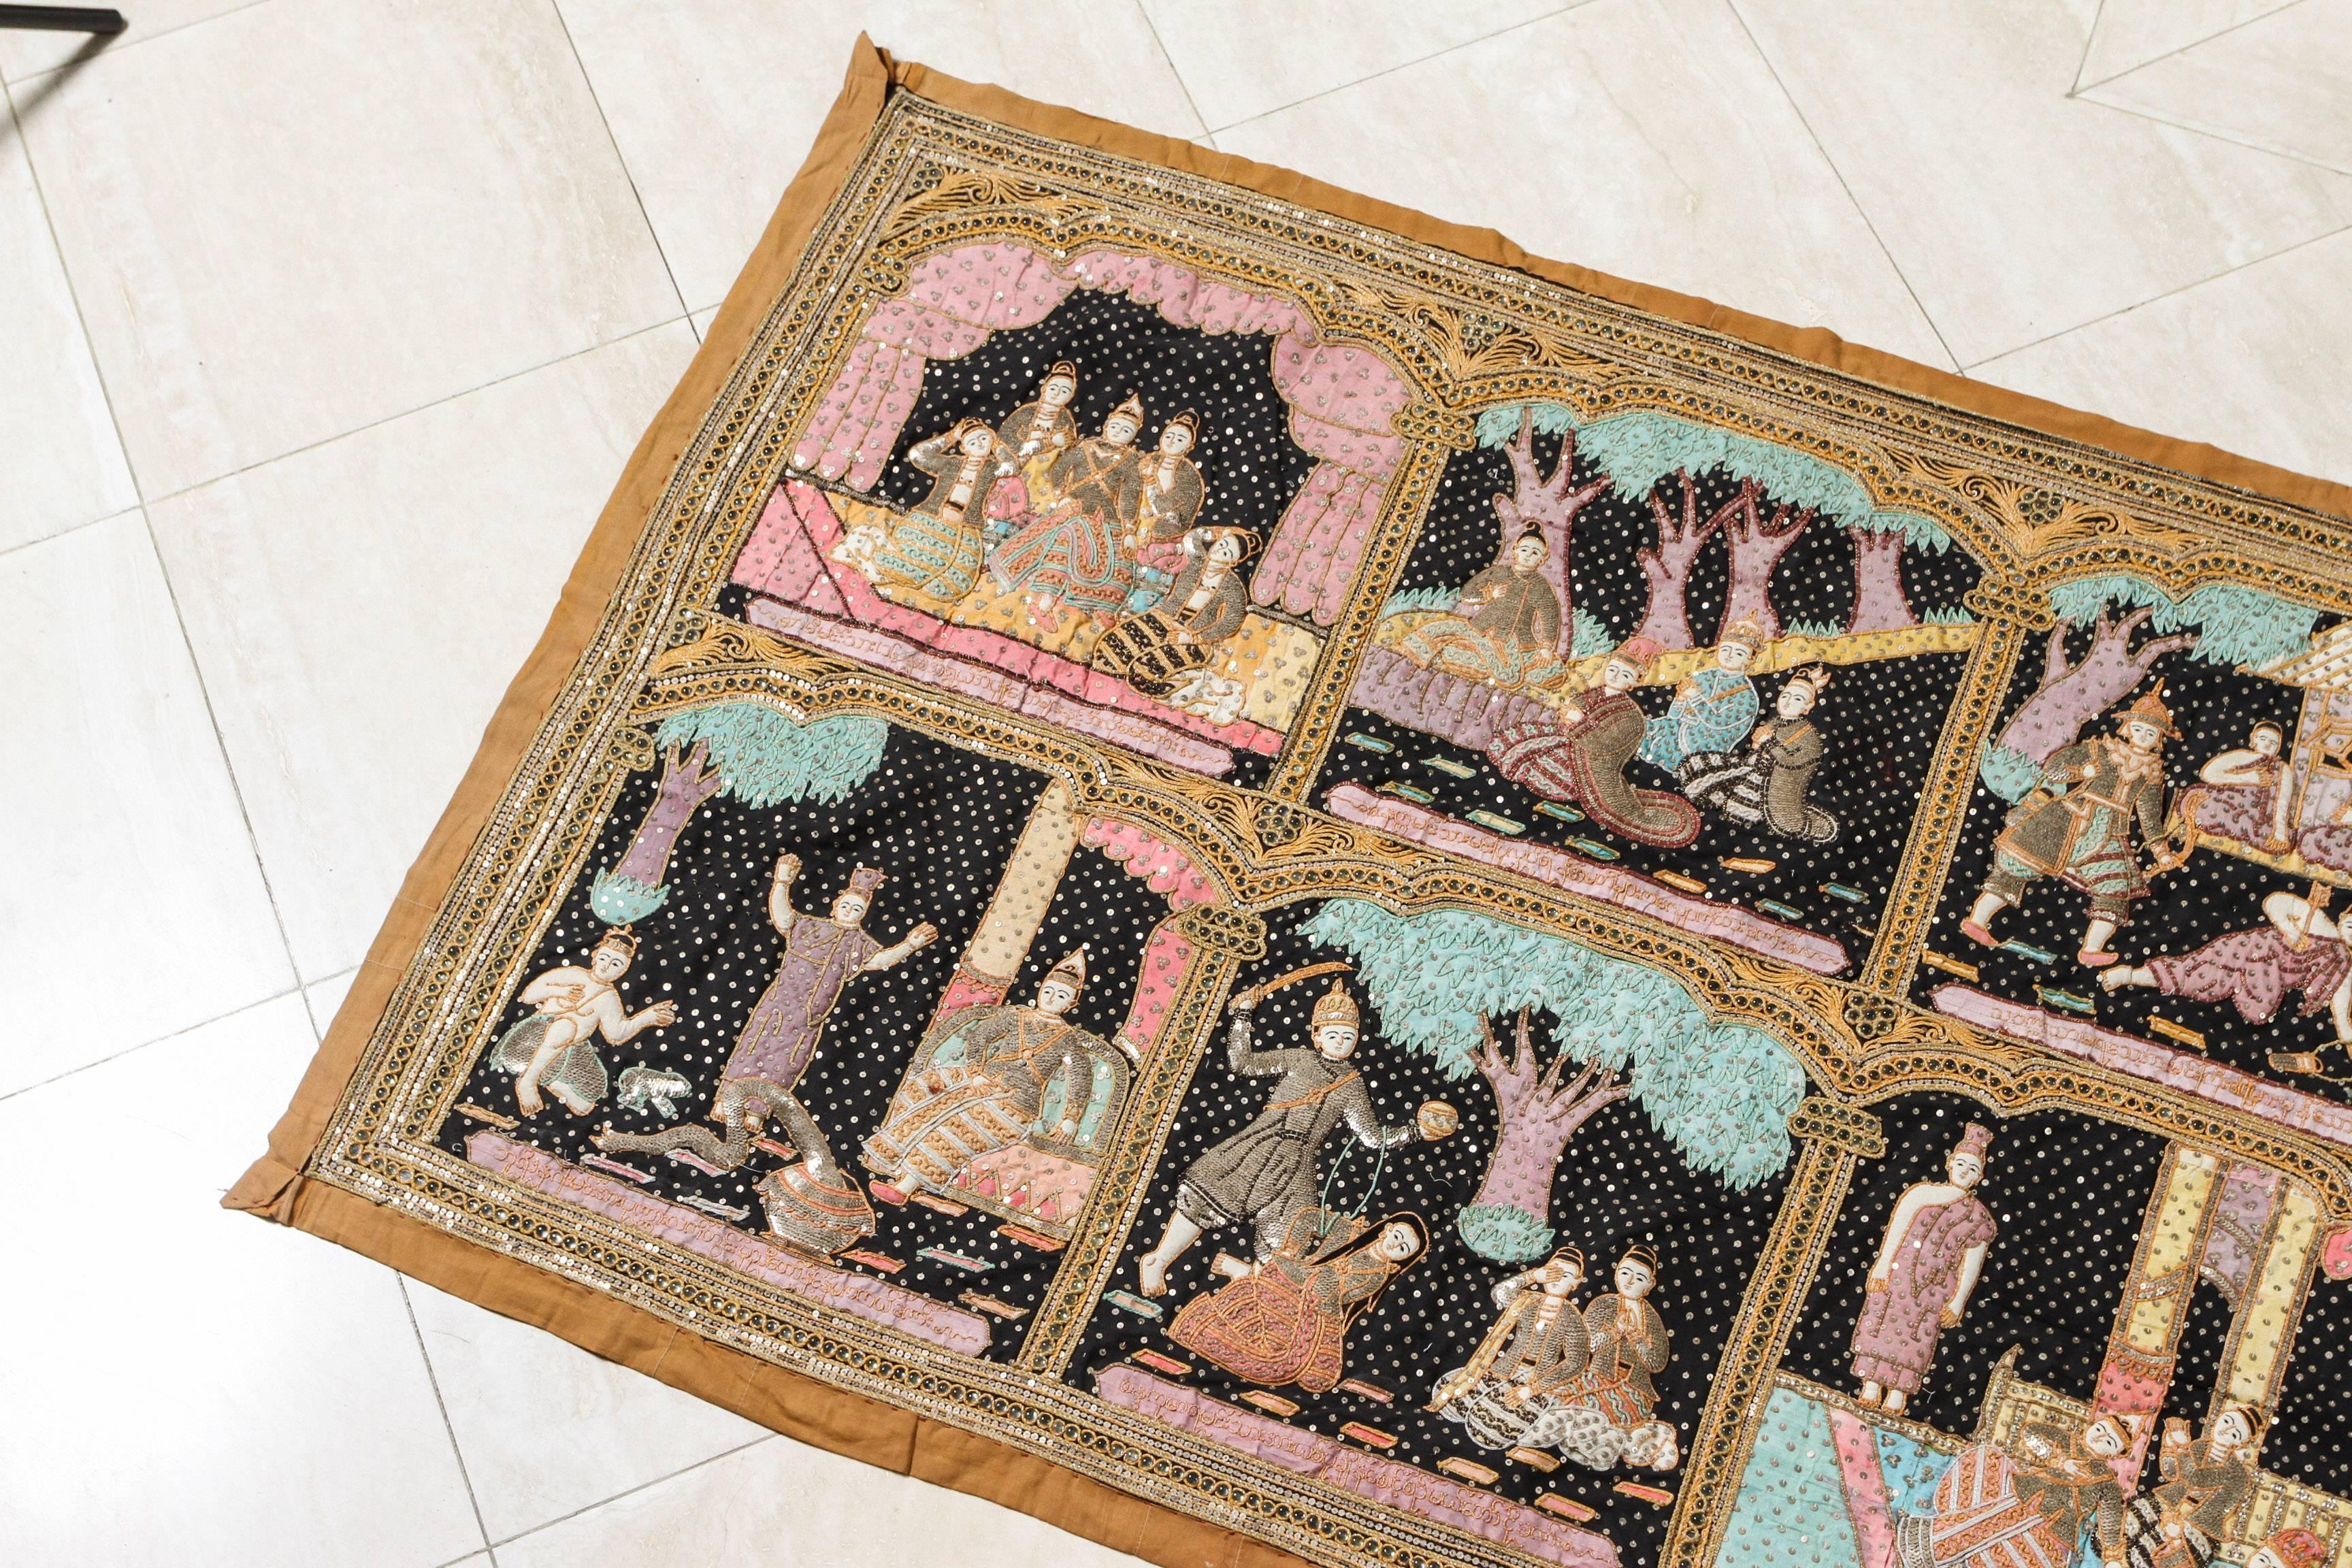 Fabuleuse grande tapisserie birmane Kakaga brodée de perles et ornée de paillettes et de perles.
Cette tapisserie murale vintage réalisée à l'aiguille présente dix scènes différentes tirées de l'ancien poème épique hindou, le Ramayana, ou de la